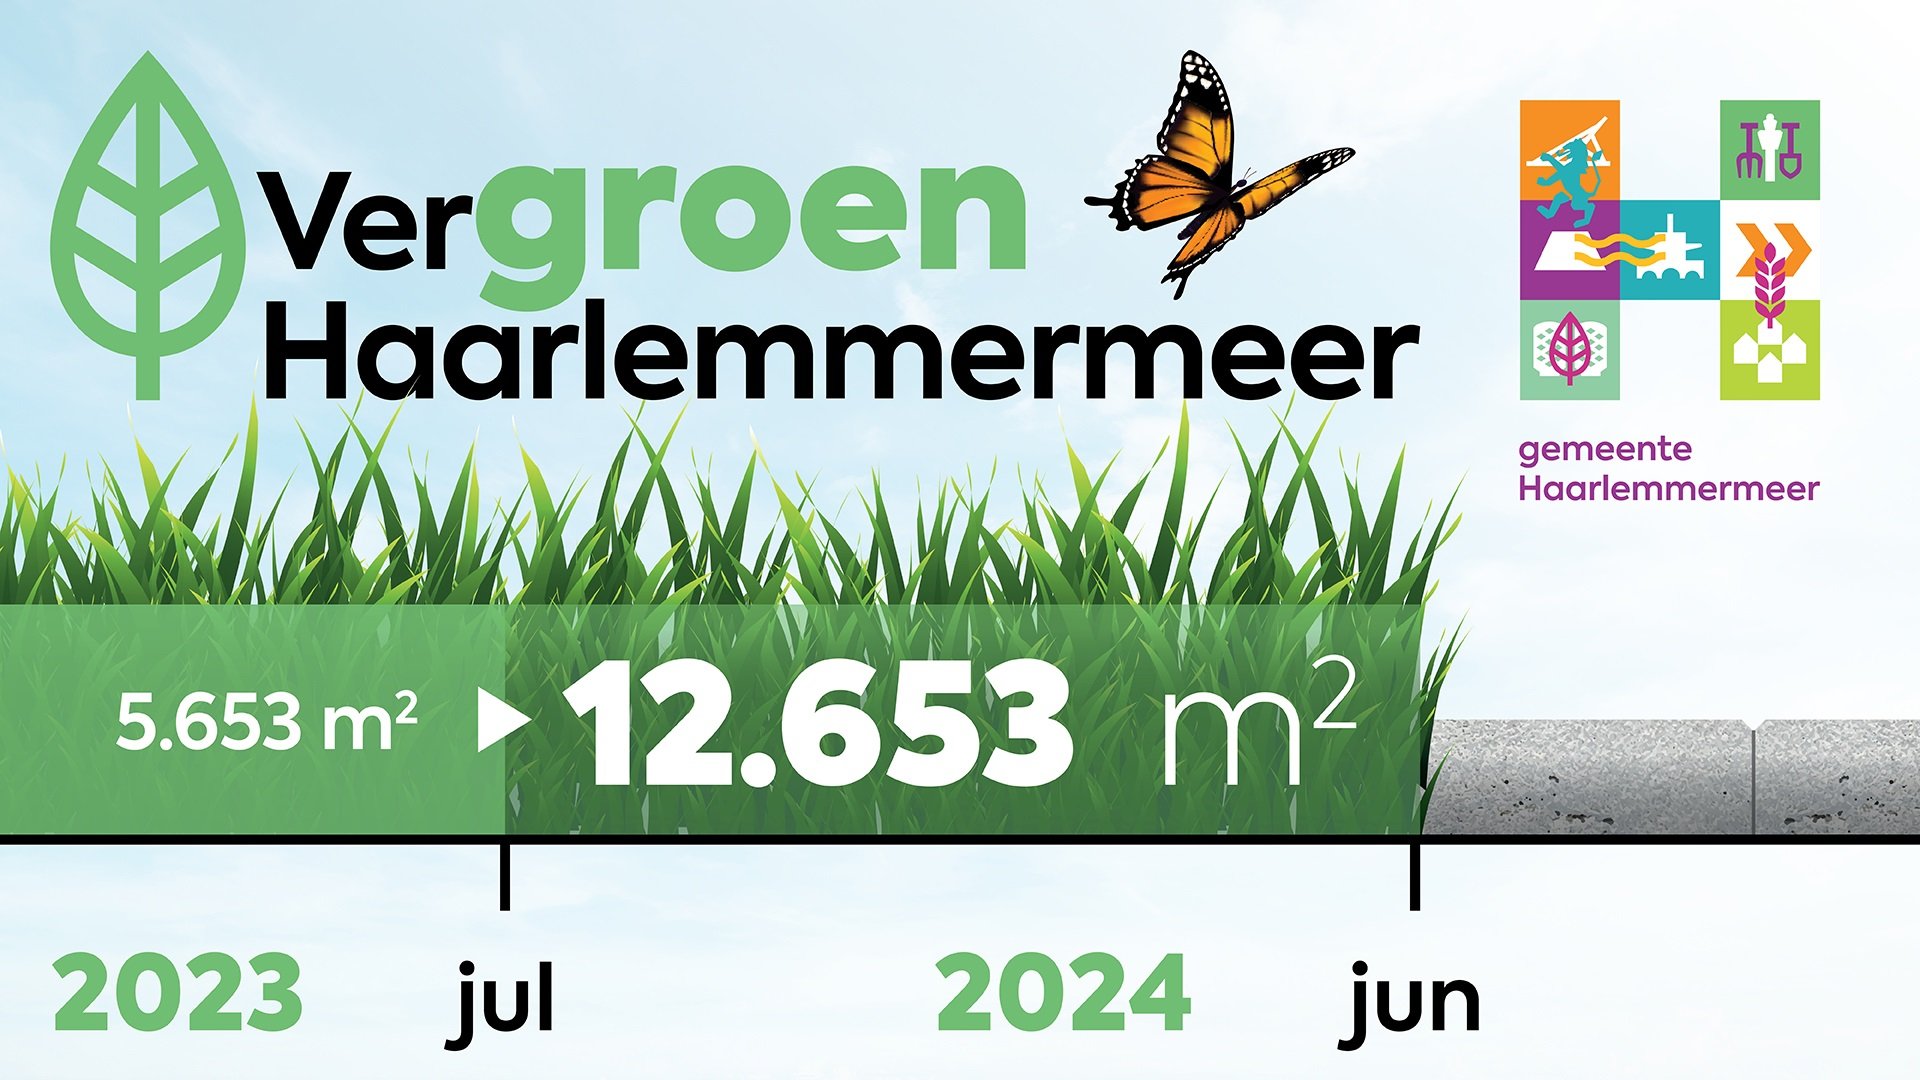 De vergroenmeter die aangeeft dat de tussenstand van de vergroening van Haarlemmermeer nu 12.653 m2 is